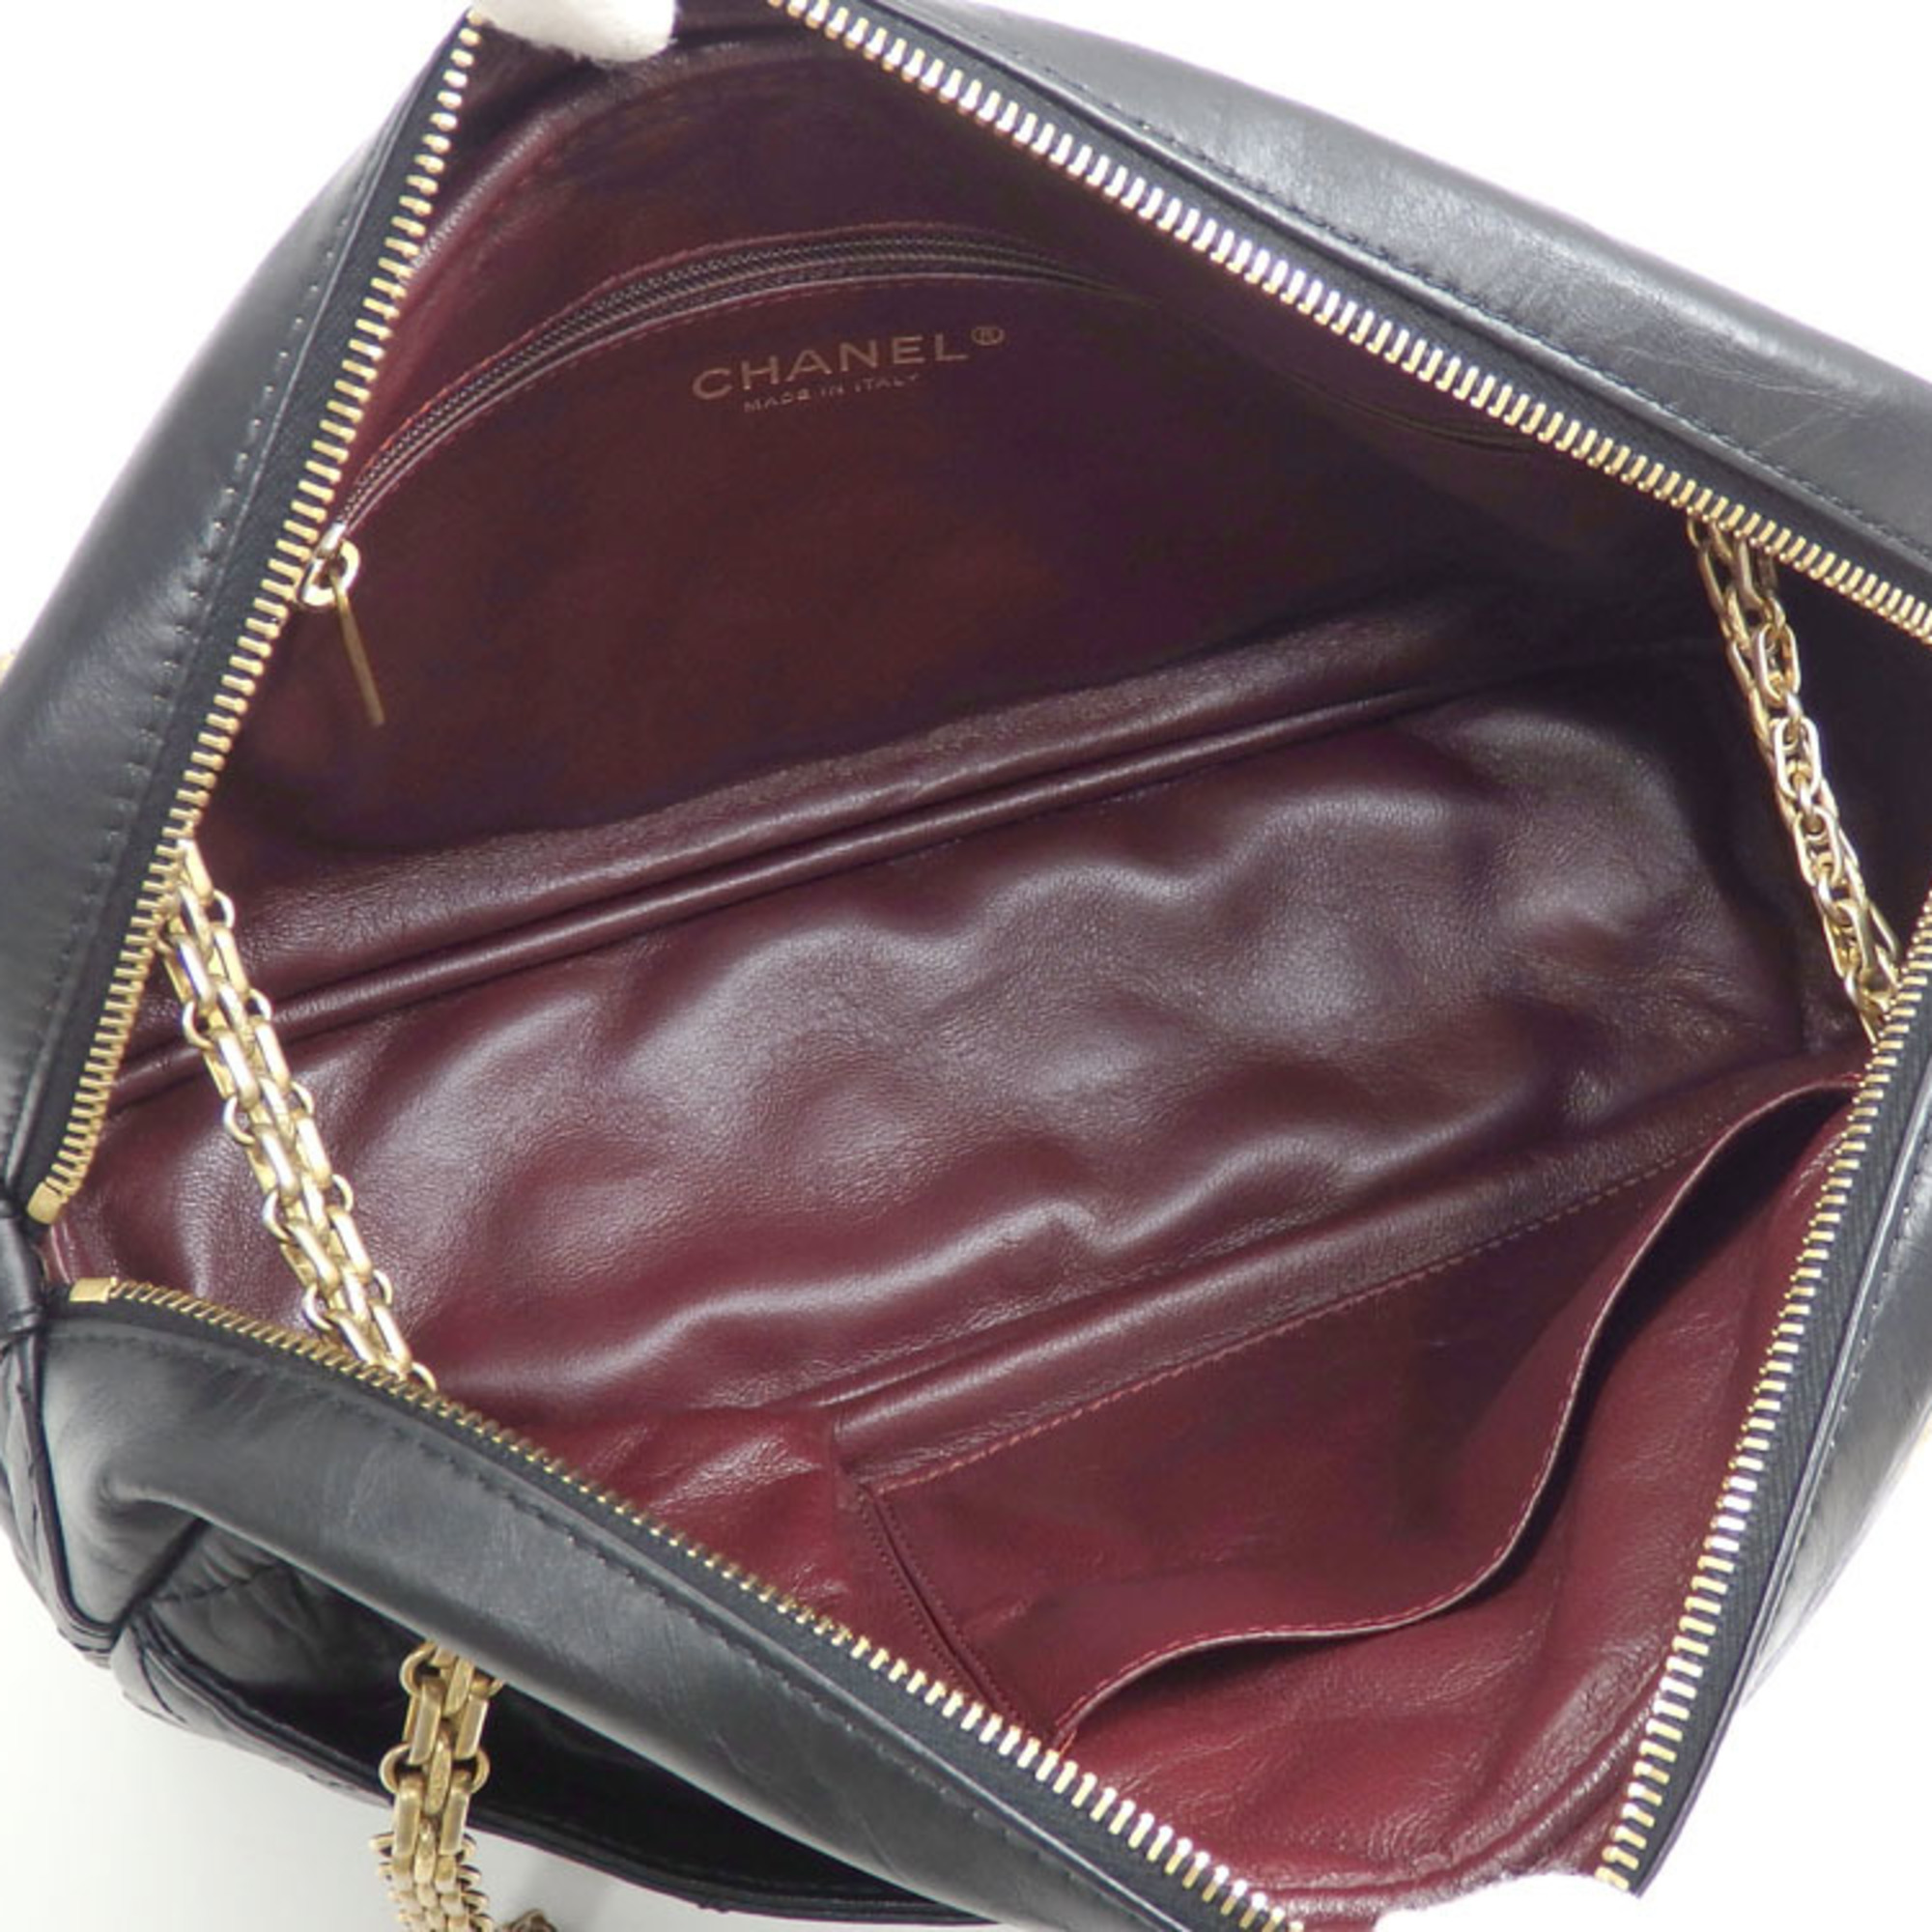 Chanel Chain Shoulder Bag 2.55 Women's Black Leather Wrinkled